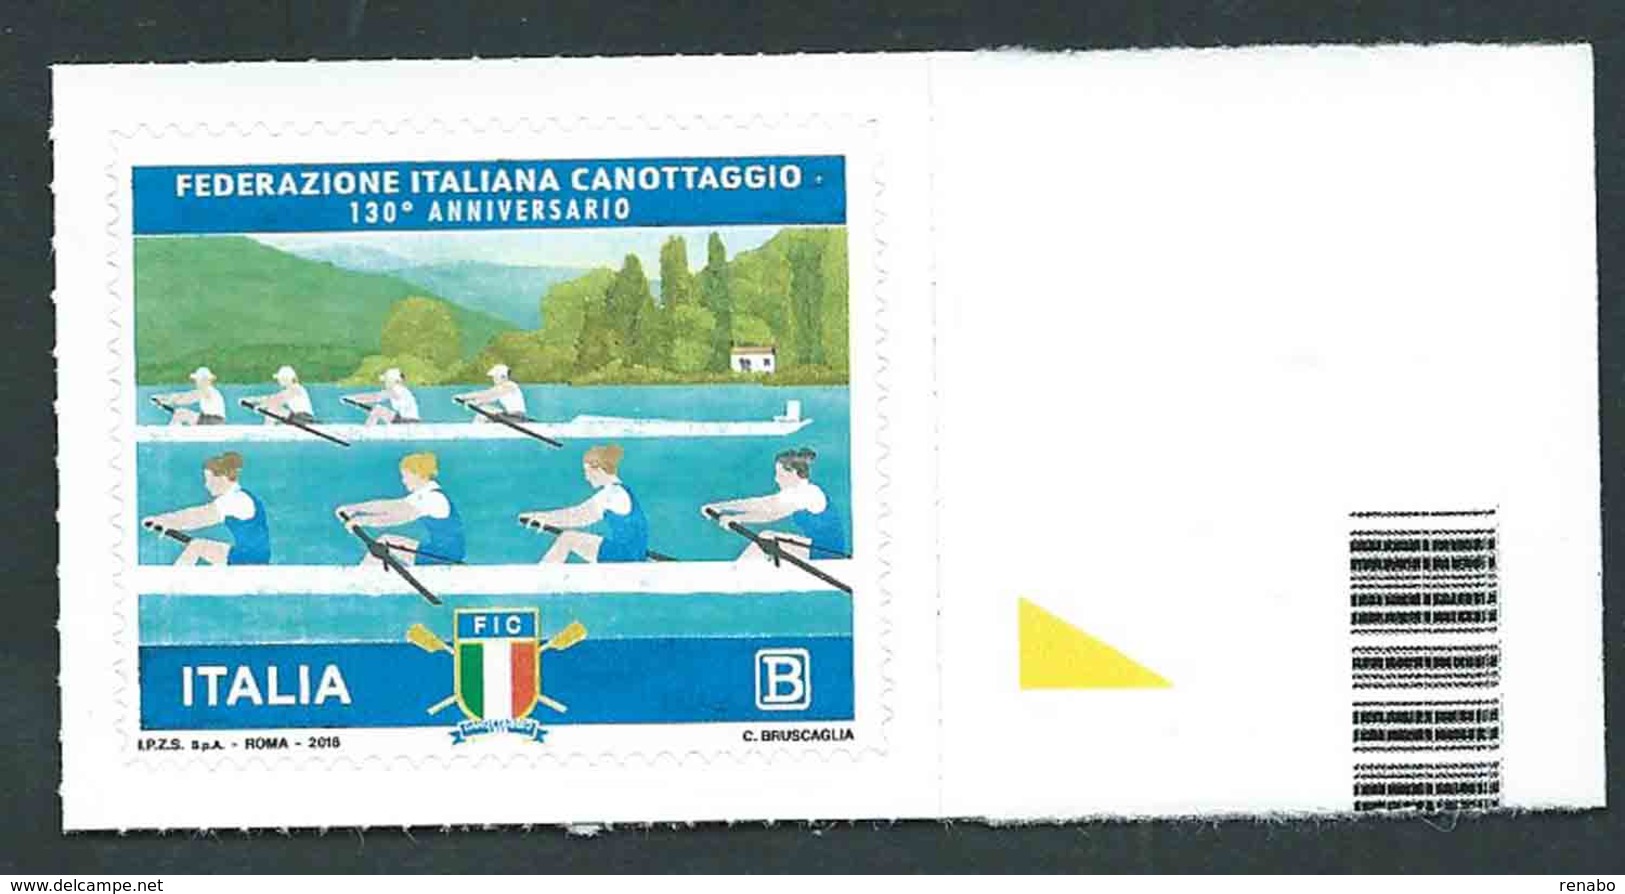 Italia, Italy, Italien 2018; Federazione Italiana Canottaggio, 130° Anniversario; Bordo Destro - Remo